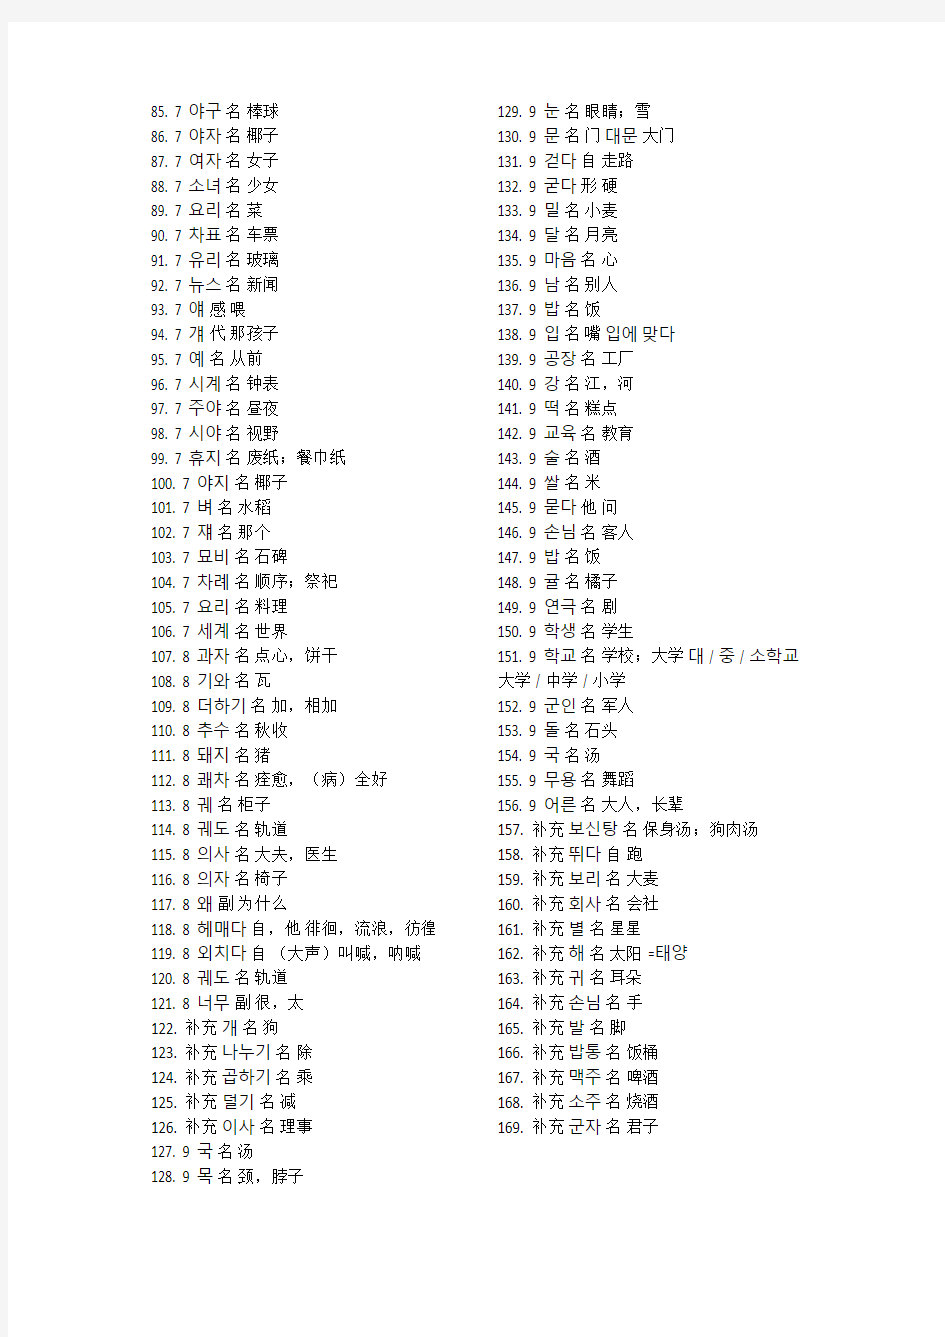 (完整版)标准韩国语单词汇总,推荐文档